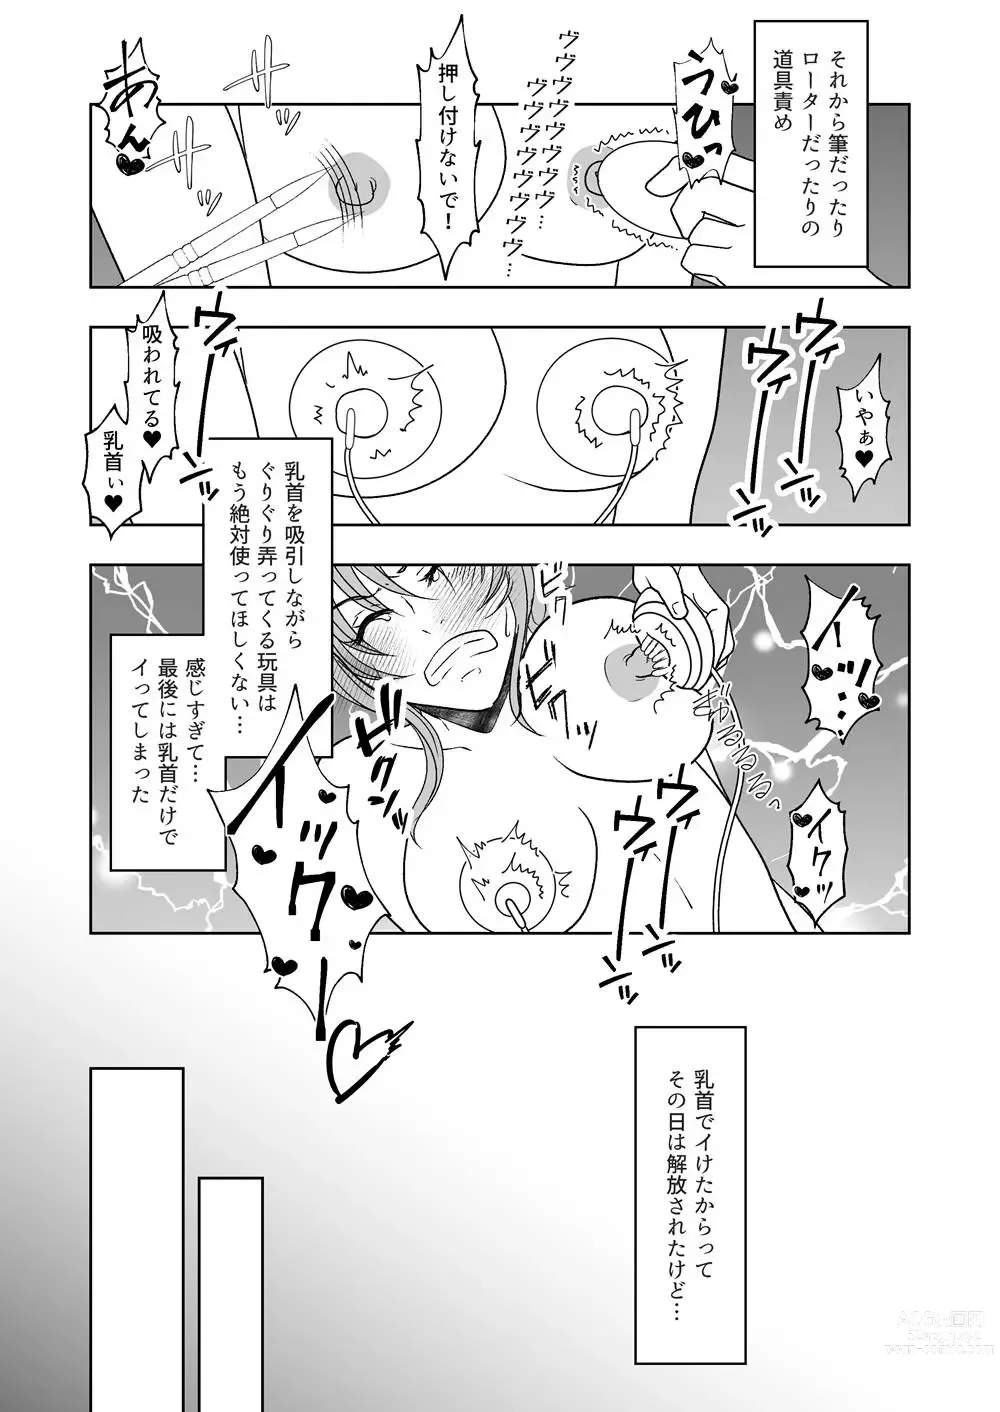 Page 16 of doujinshi Ushi Chichi Les Ijime